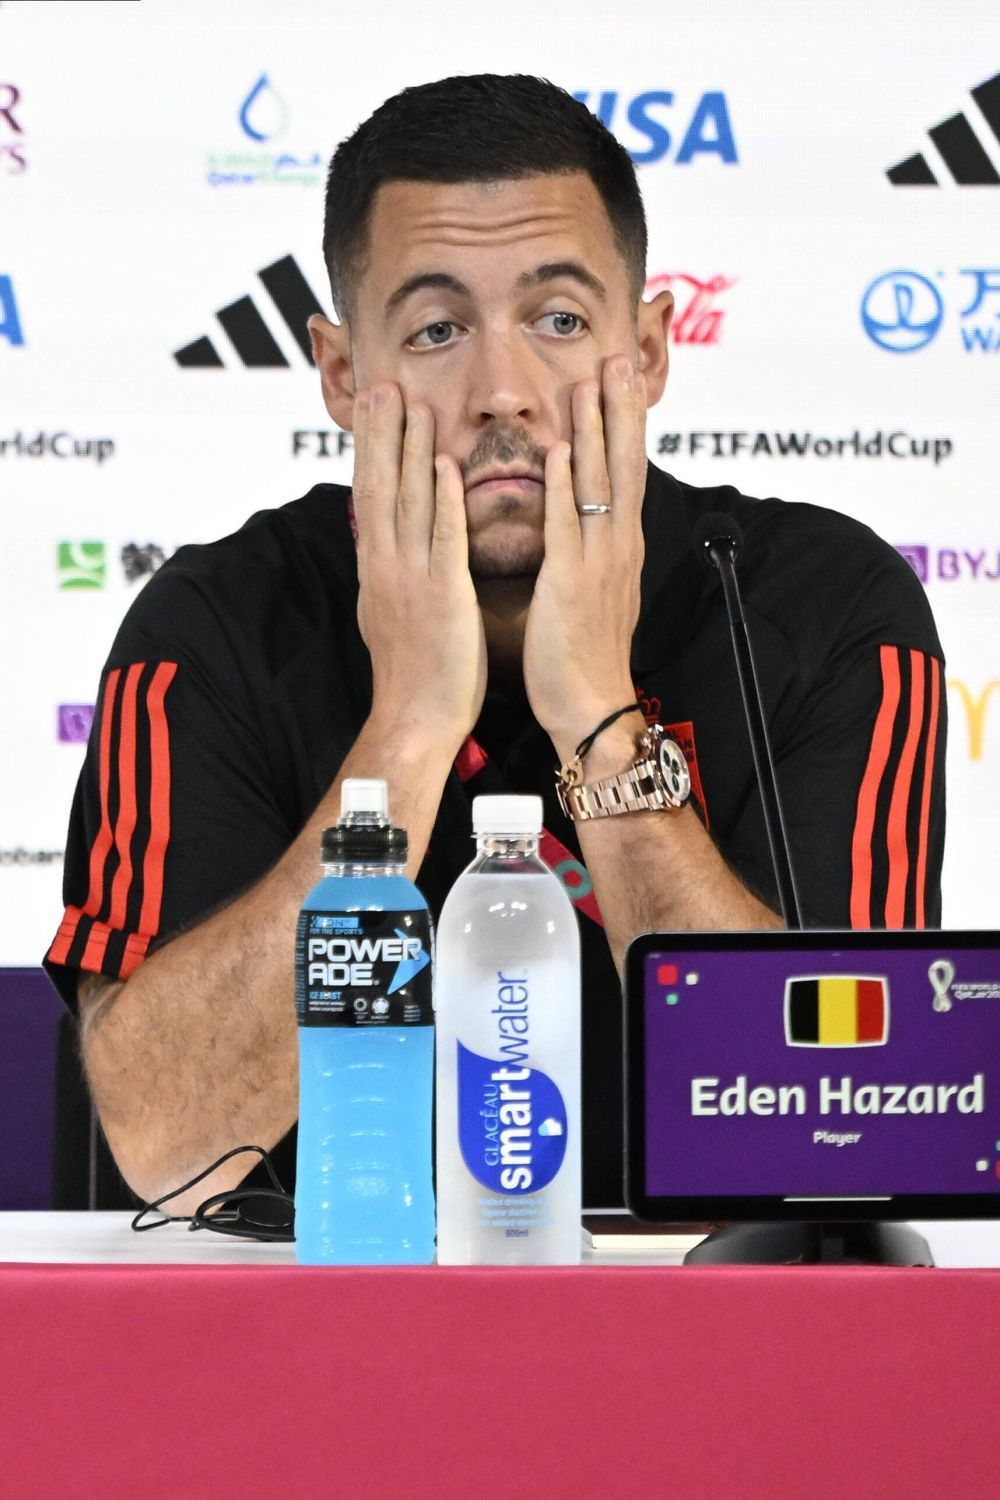 "Observ că te-ai îngrășat. Care e cauza?". Cum a reacționat Eden Hazard la conferința de presă_6